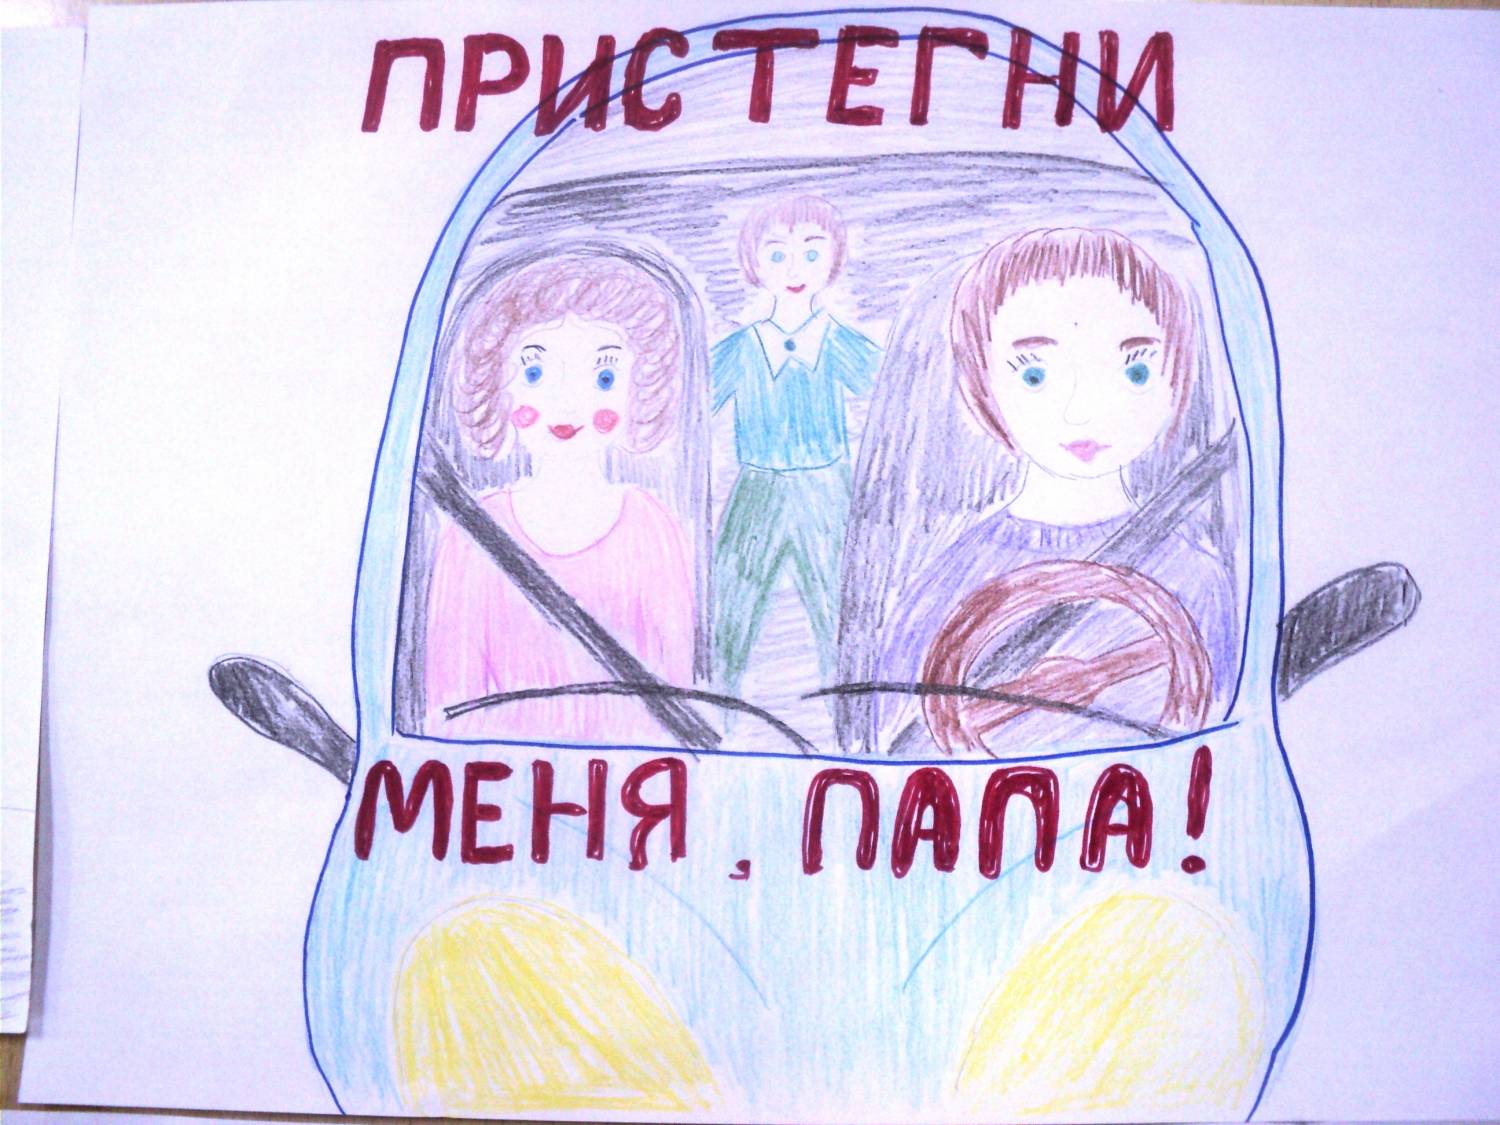 Придумать эскиз плаката. Ребёнок главный пассажир рисунок. Плакат призывающий к соблюдению правил безопасности в транспорте. Рисунок на тему ребенок главный пассажир. Плакат кобоюдение правилбезопвсности в траснпопте.